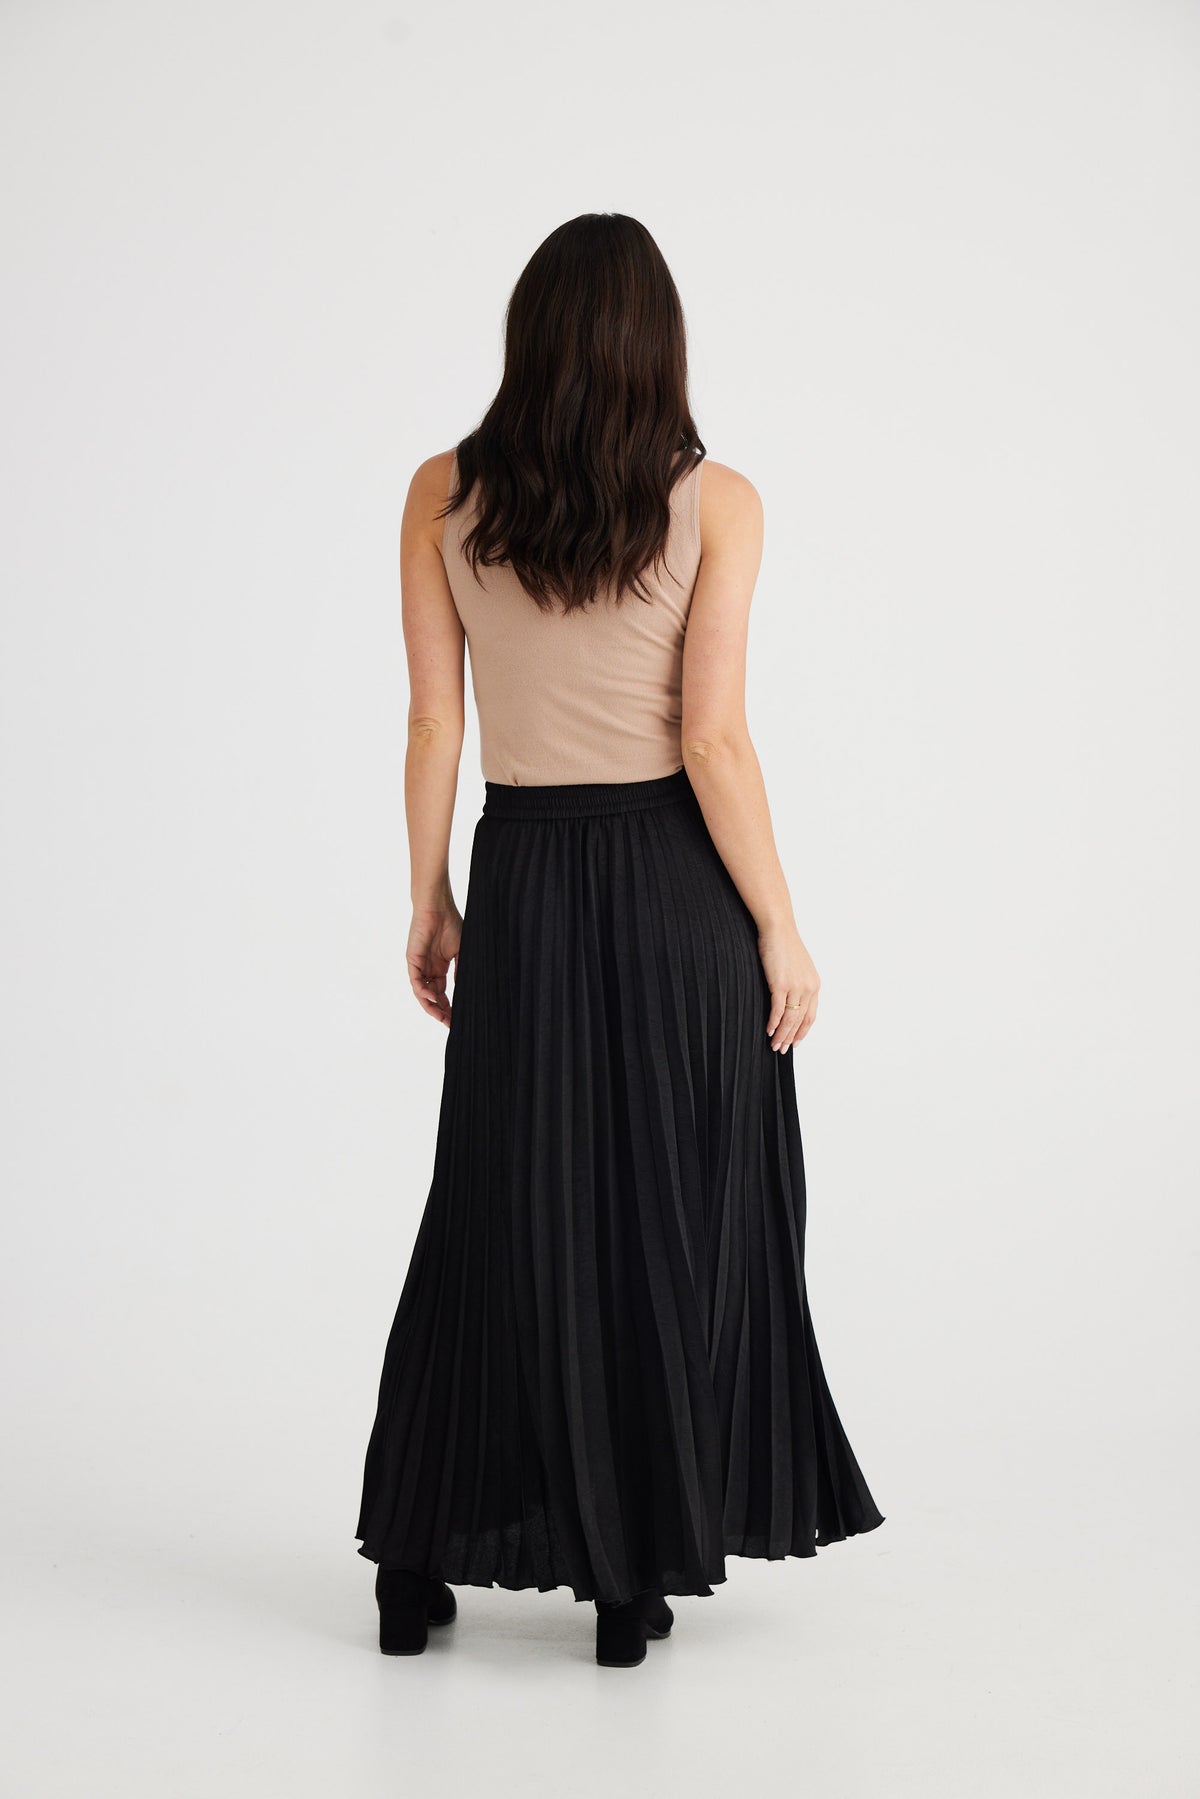 Alias pleated skirt - black